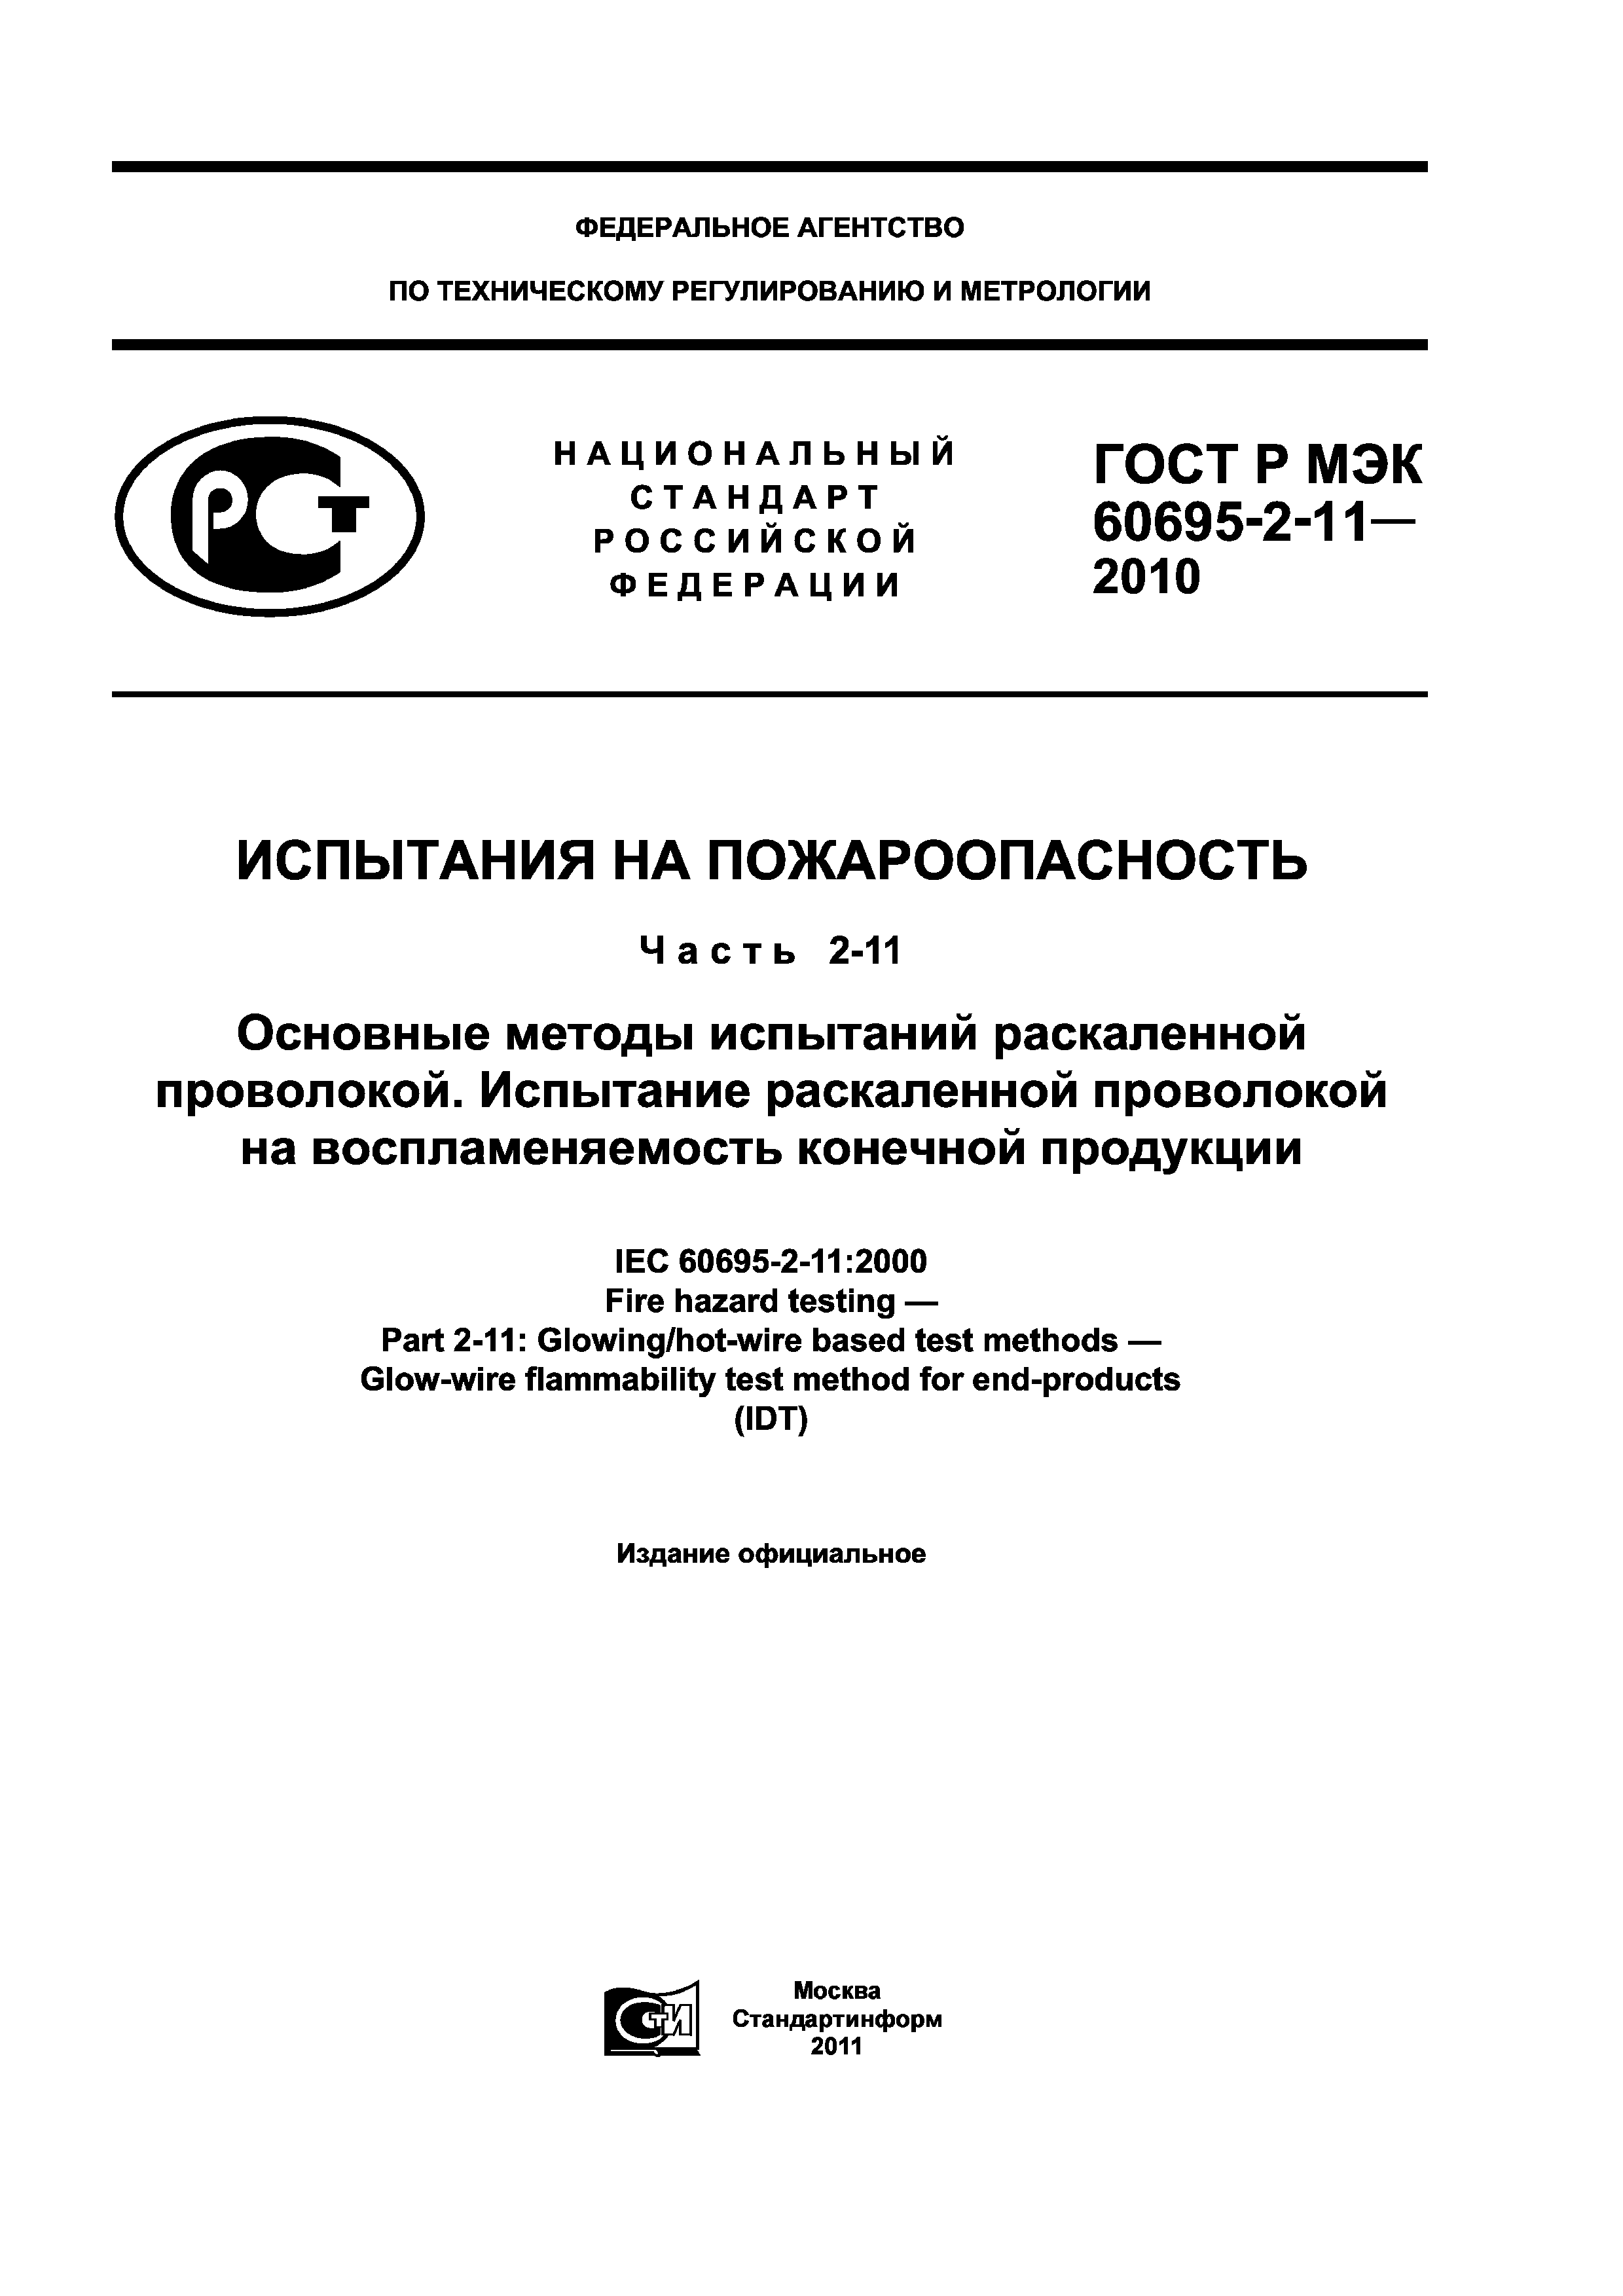 ГОСТ Р МЭК 60695-2-11-2010